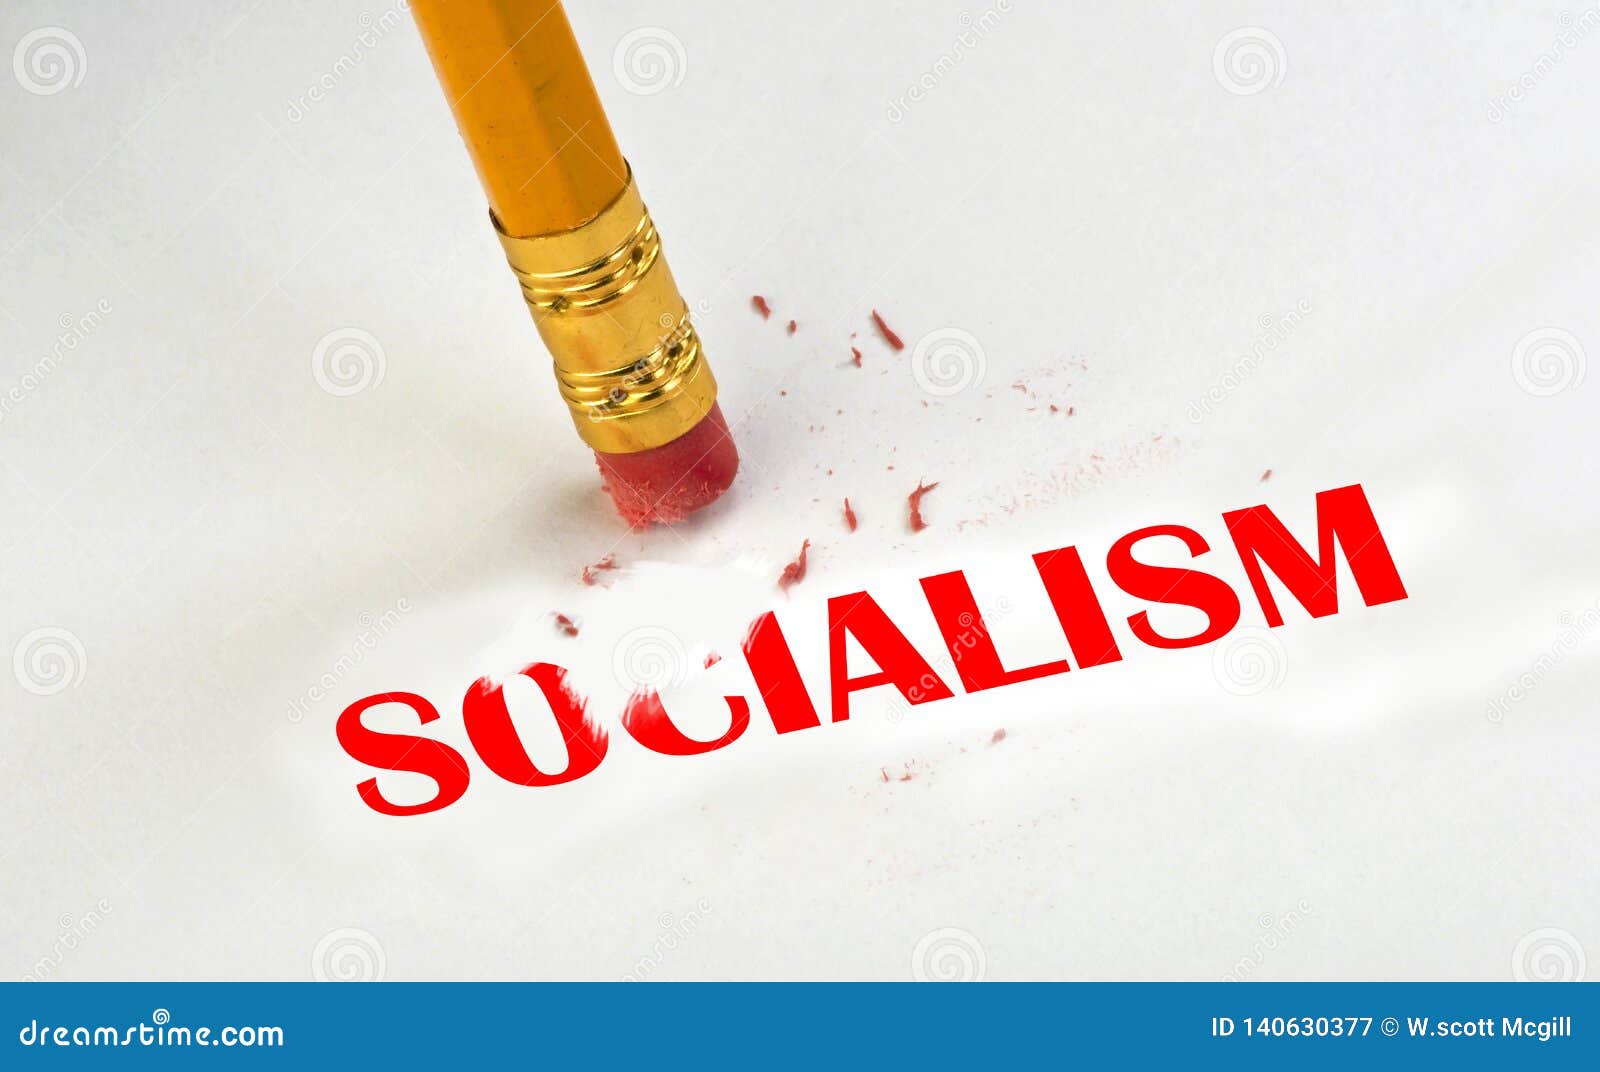 erase away socialism